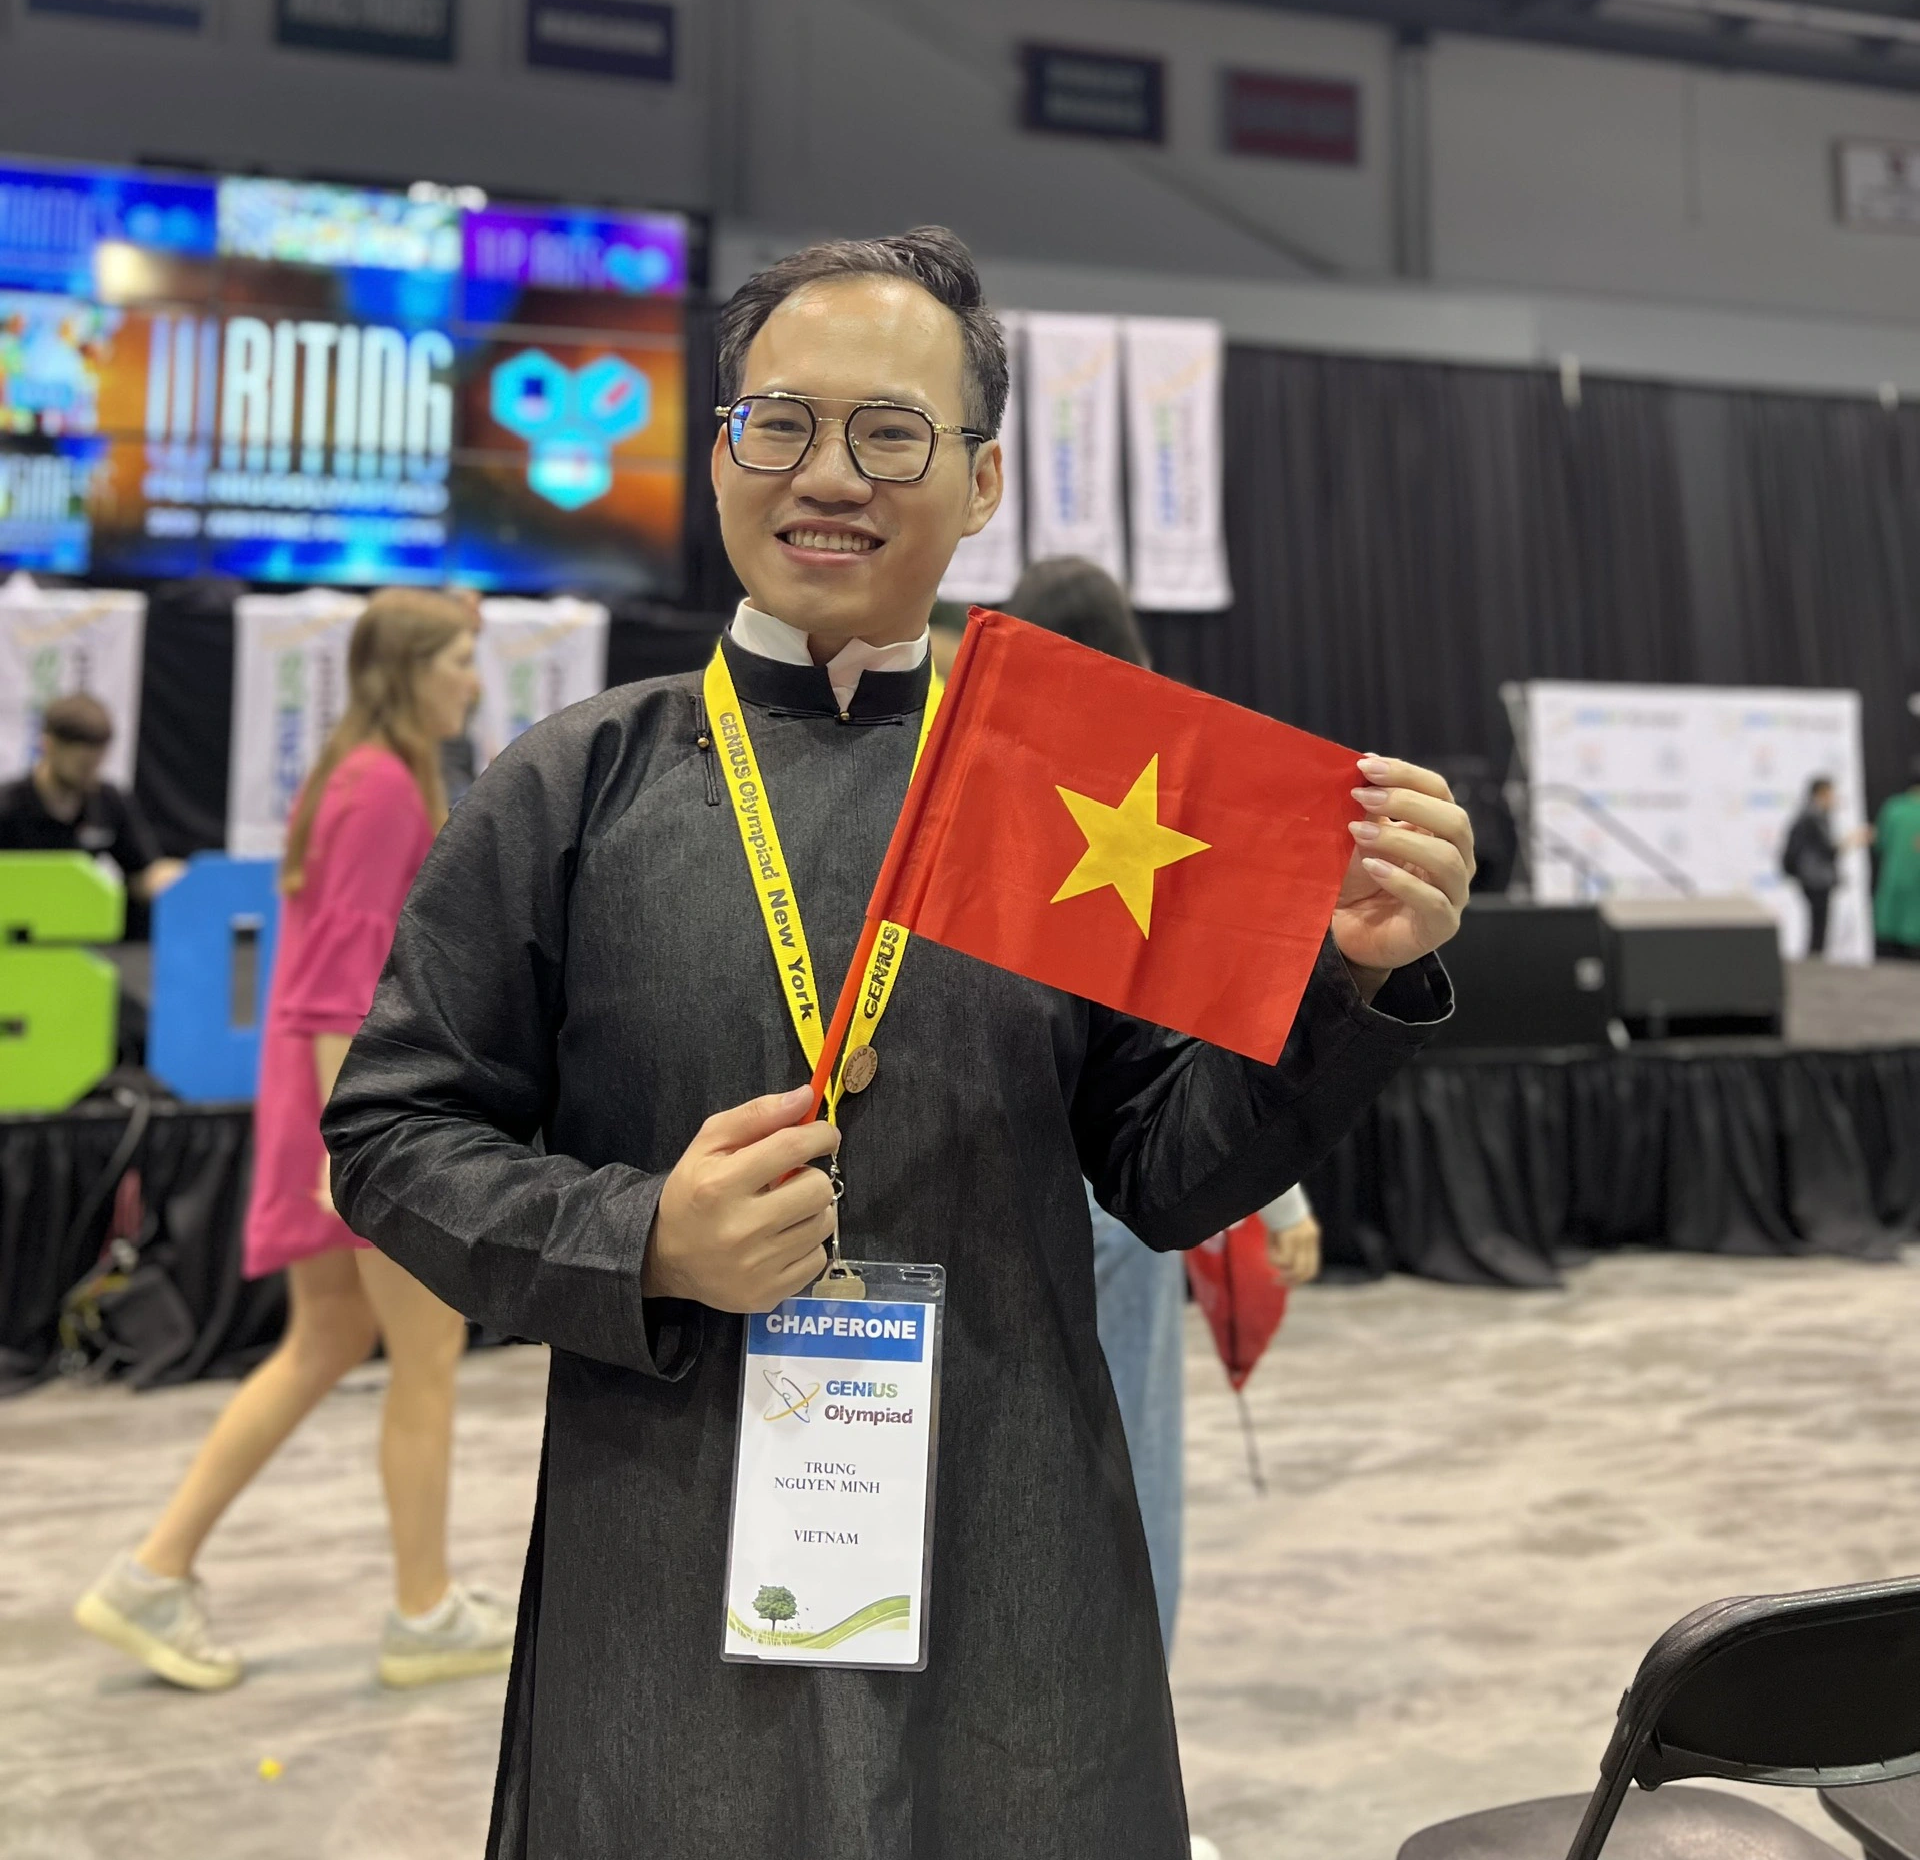 Thầy giáo Nguyễn Minh Trung trong vụ Genius Olympiad: 'Tôi chân thành xin lỗi' - Ảnh 1.